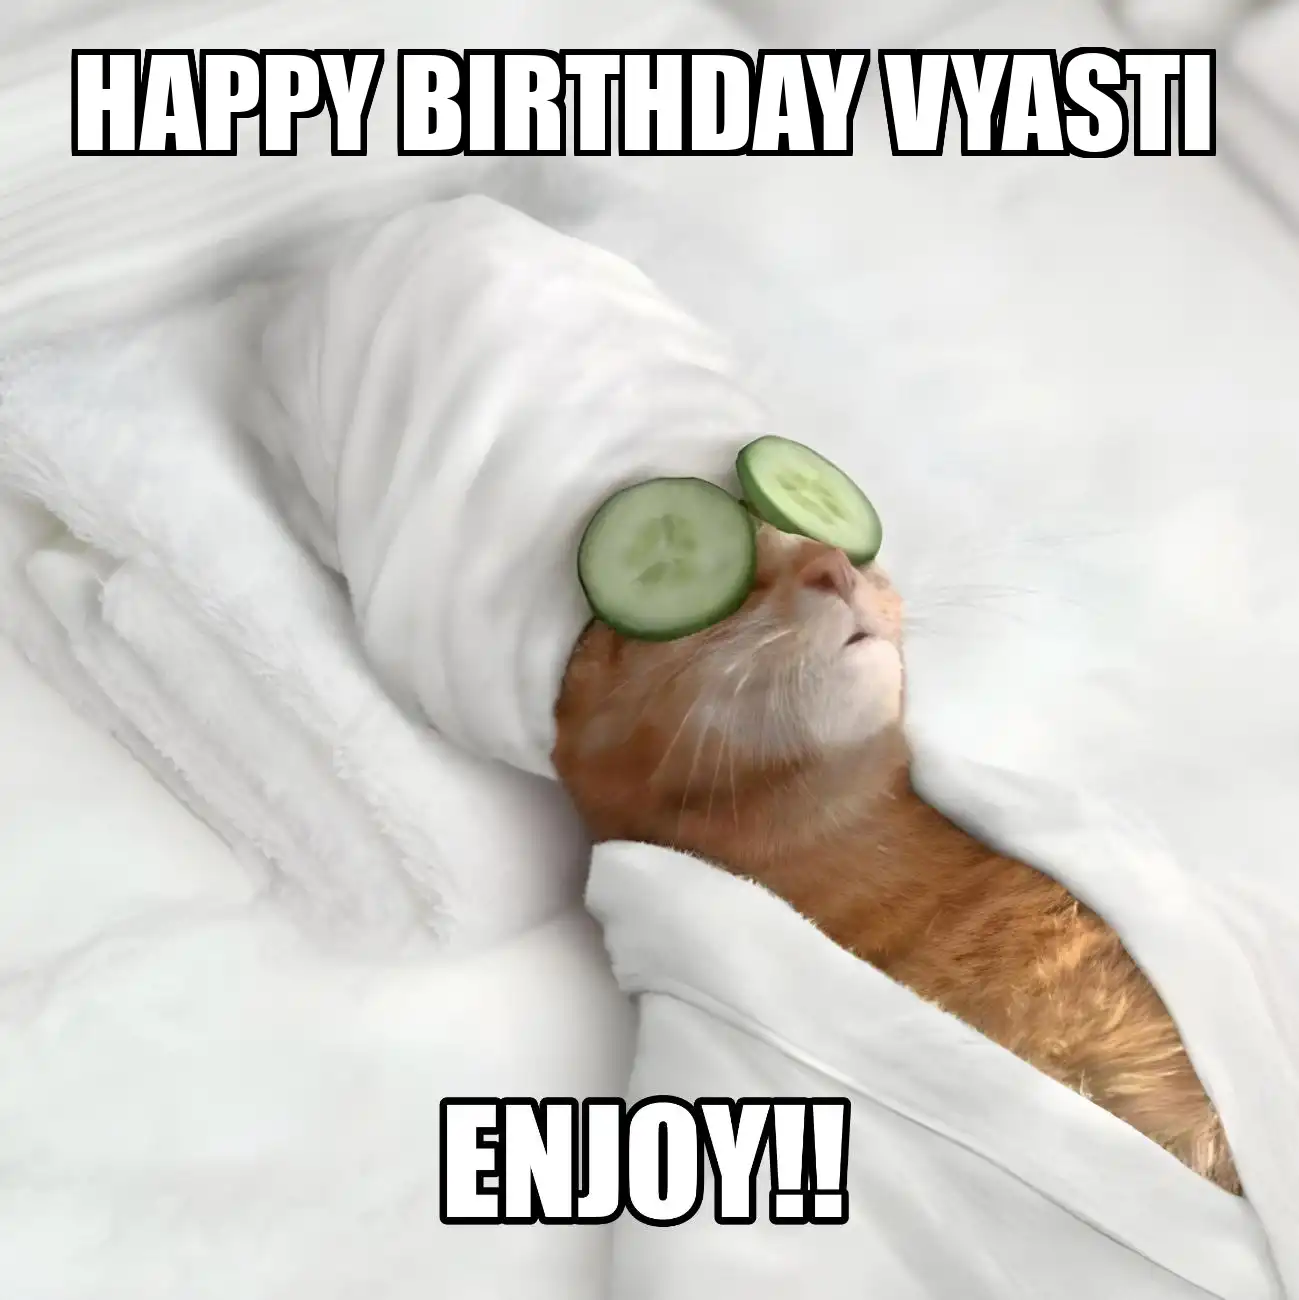 Happy Birthday Vyasti Enjoy Cat Meme